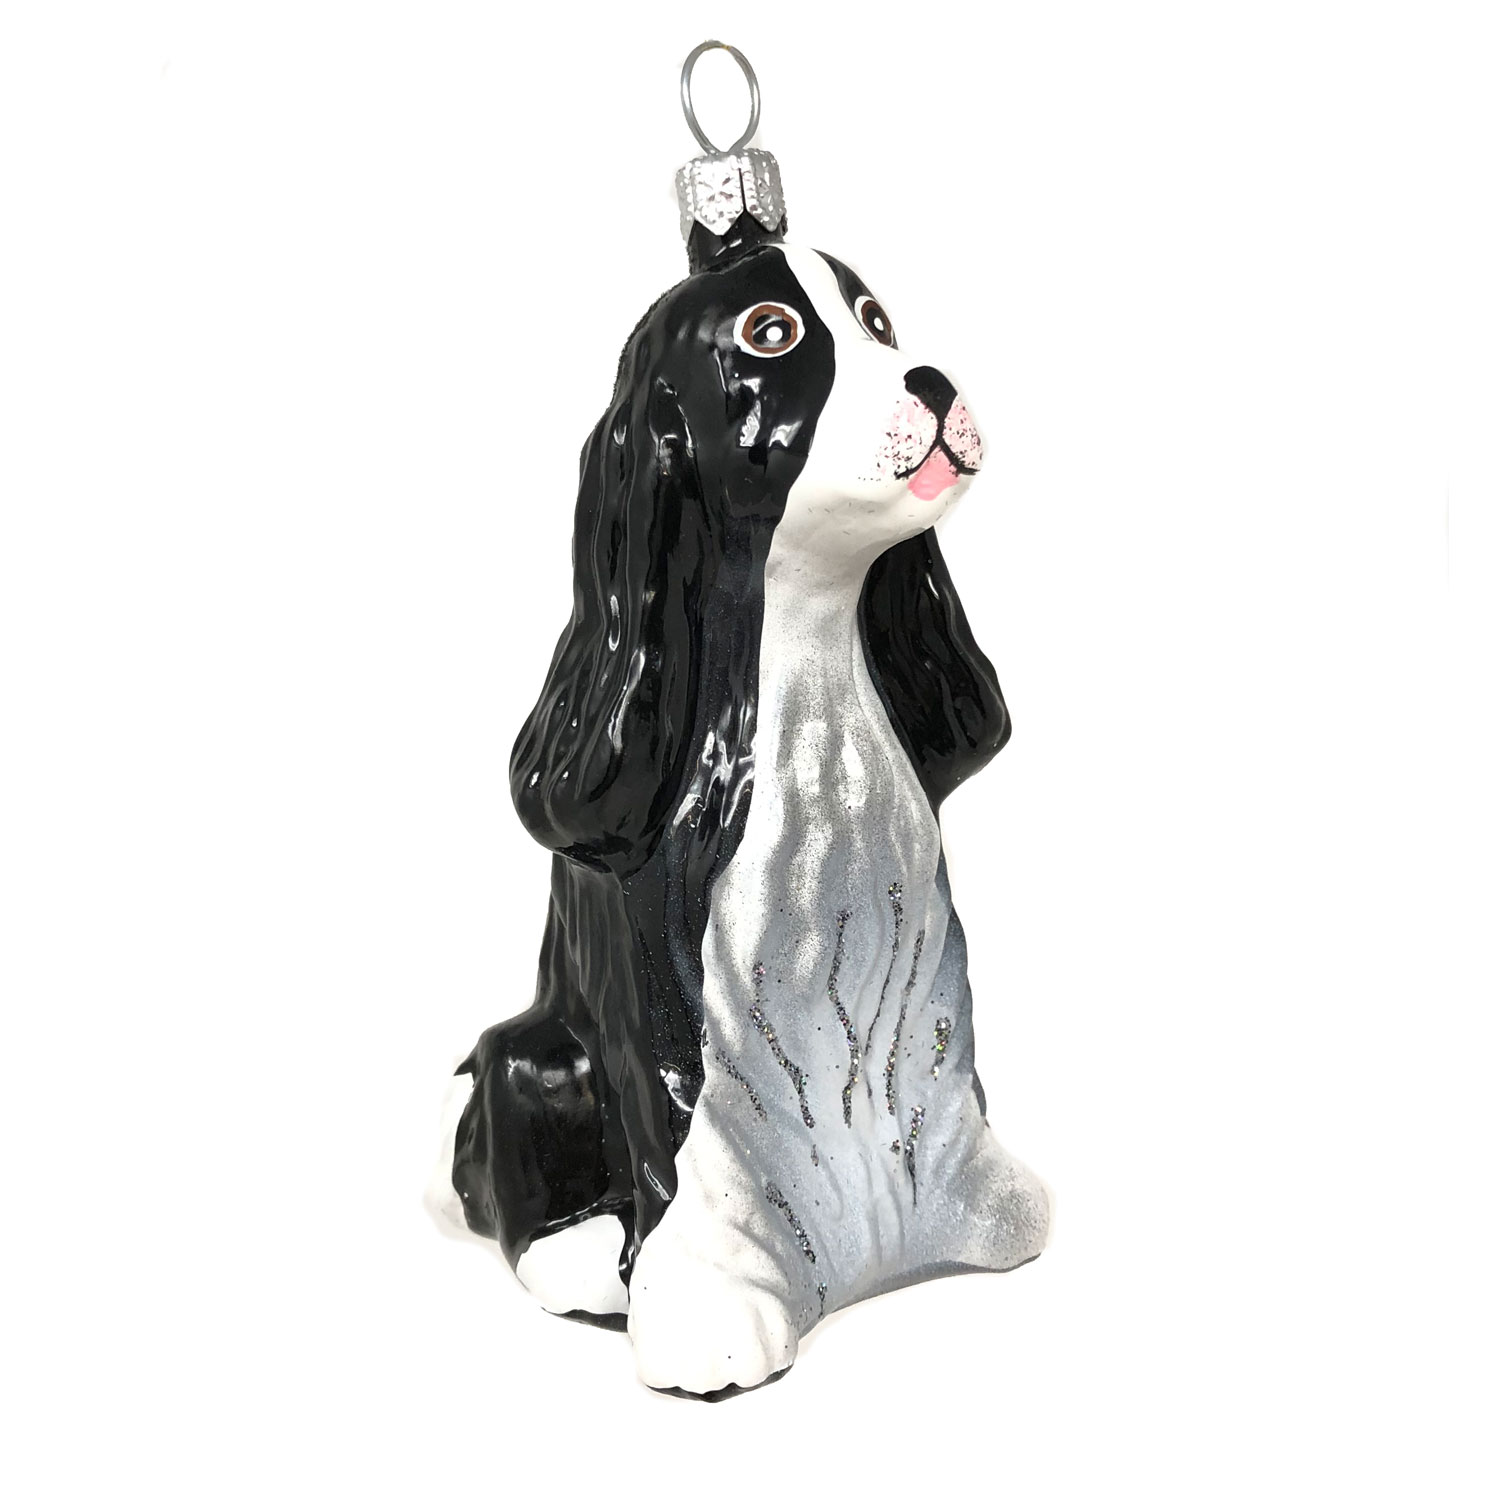 Christbaumkugel Hund, Cocker Spaniel schwarz weiß, ca. 10 cm